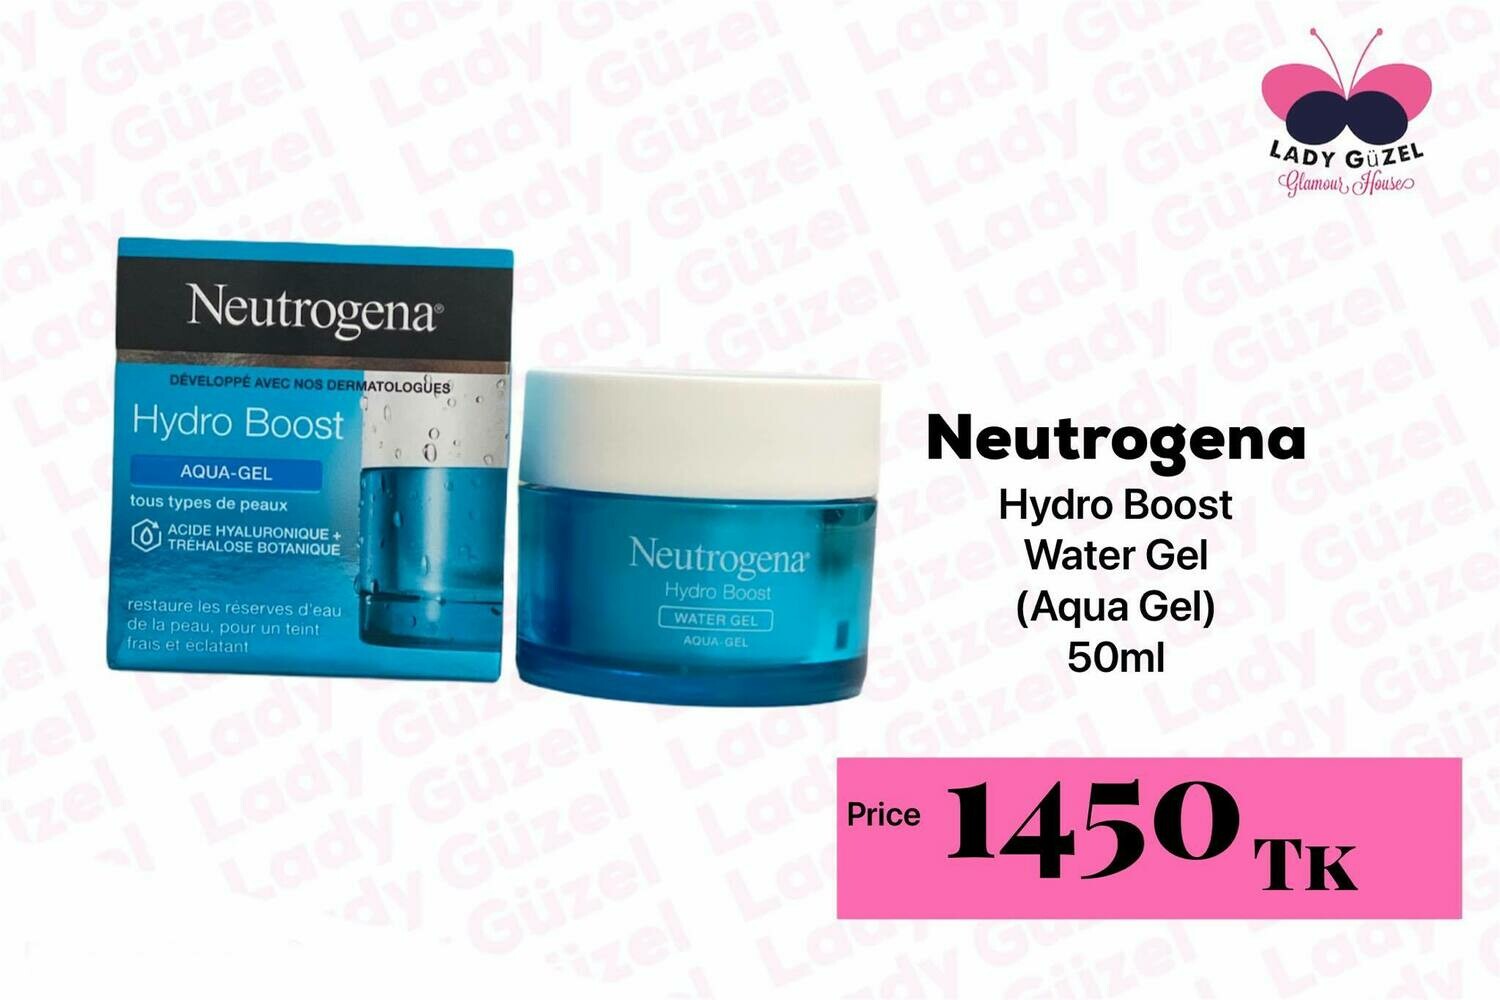 Neutrogena® Hydro Boost Water Gel